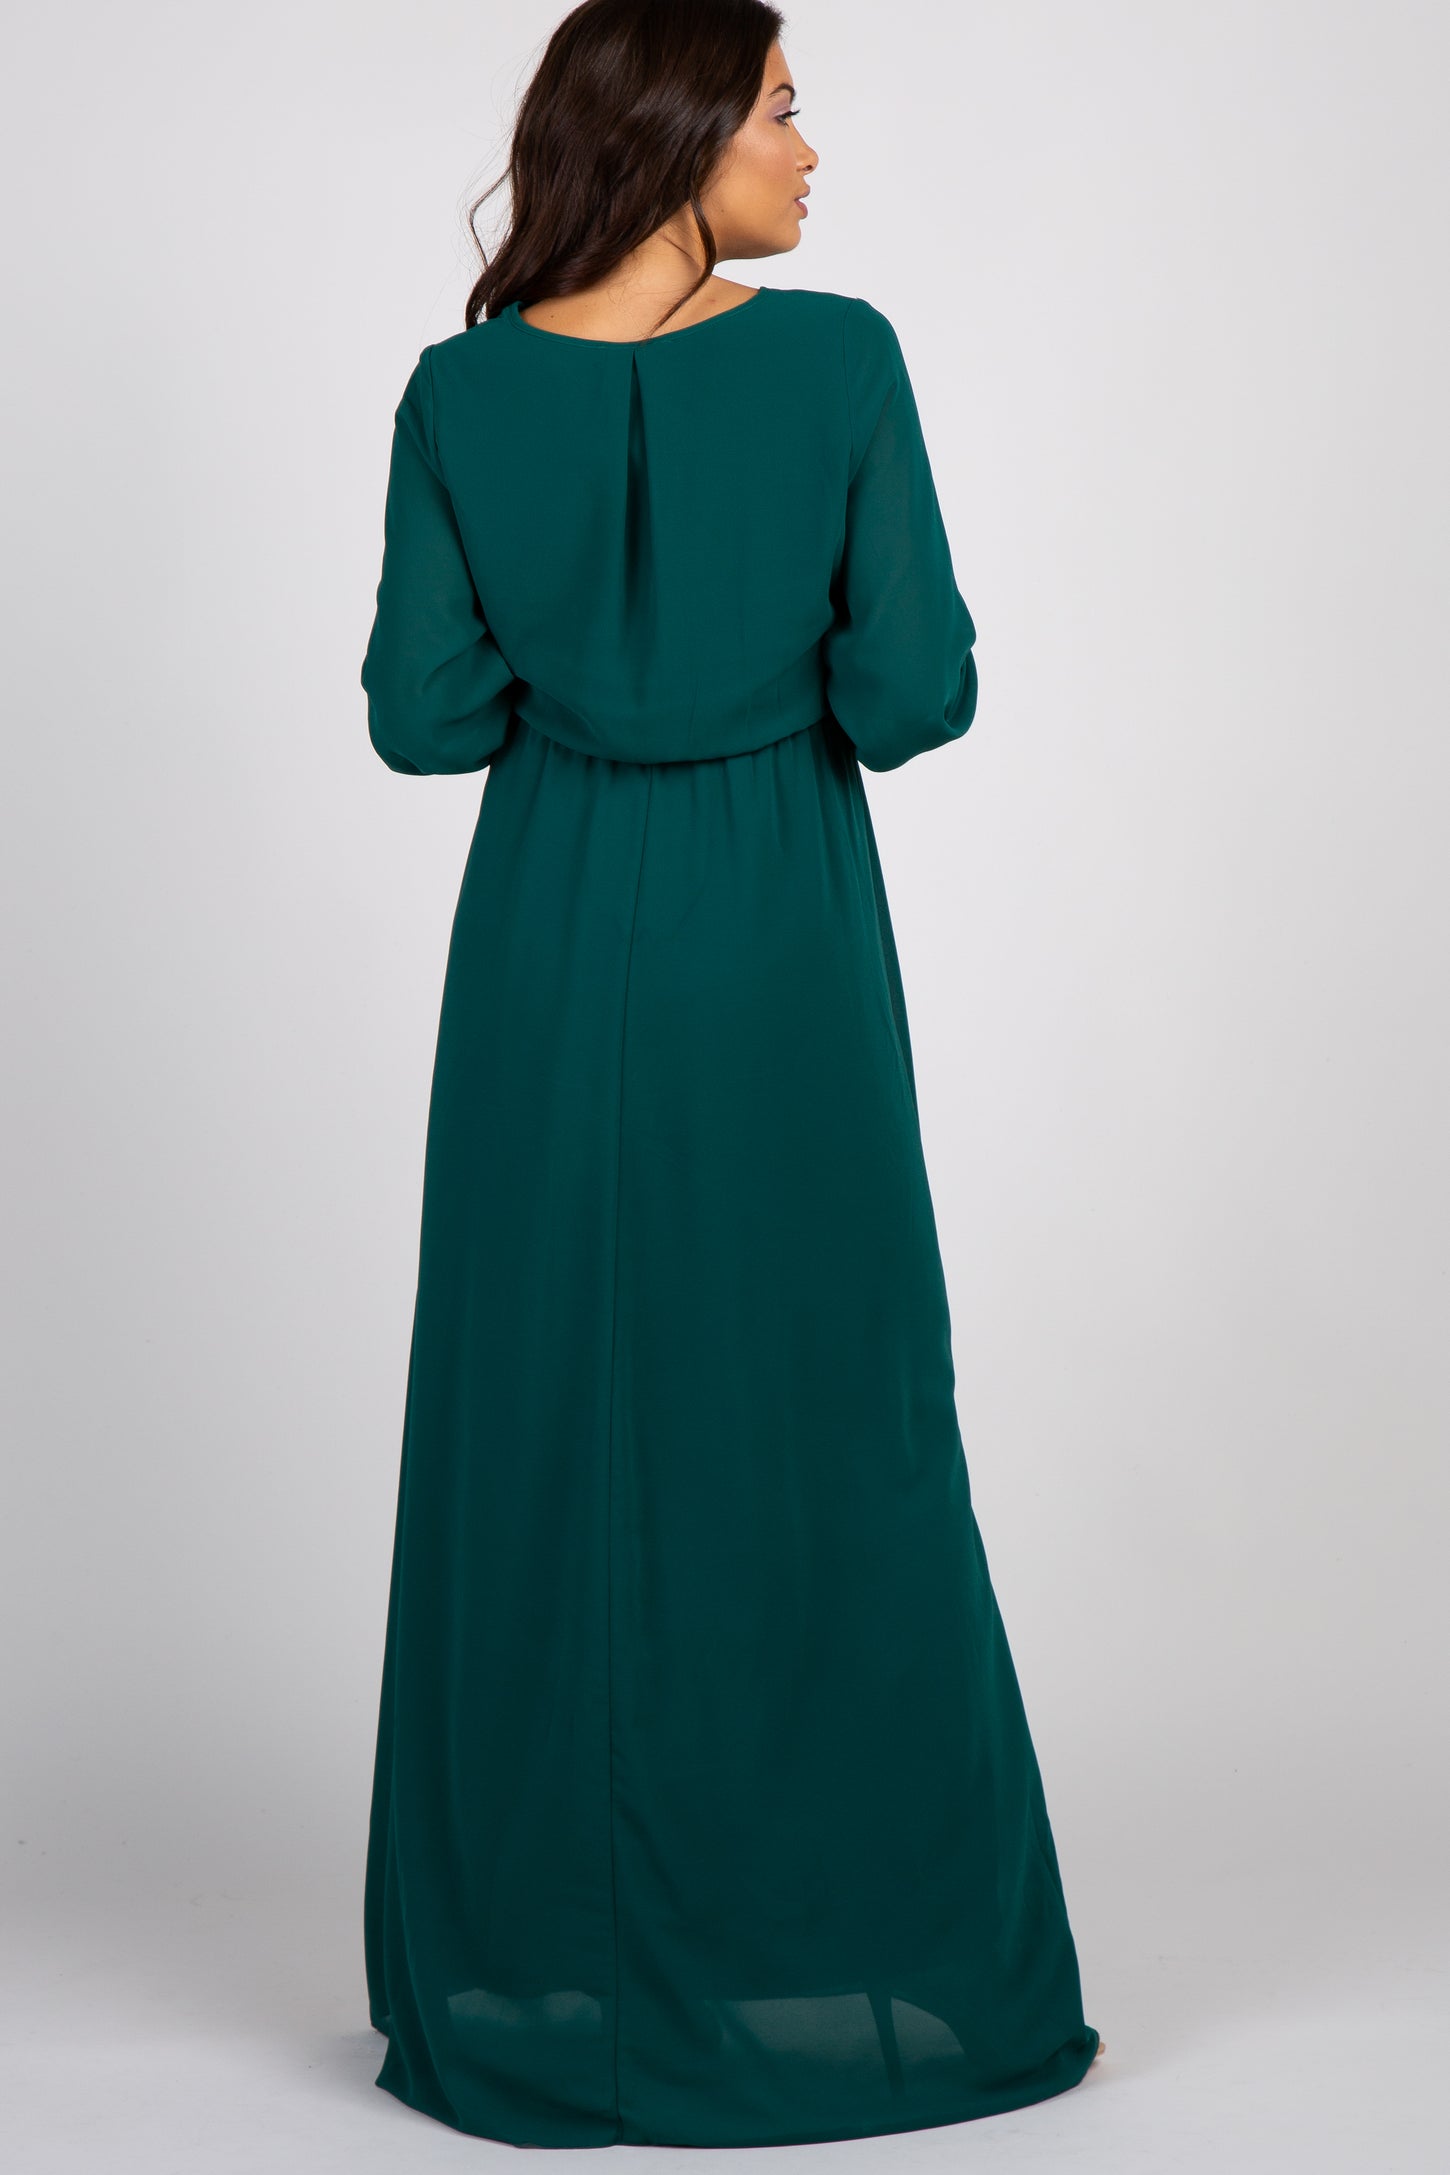 Green Chiffon Long Sleeve Pleated Maternity Maxi Dress– PinkBlush